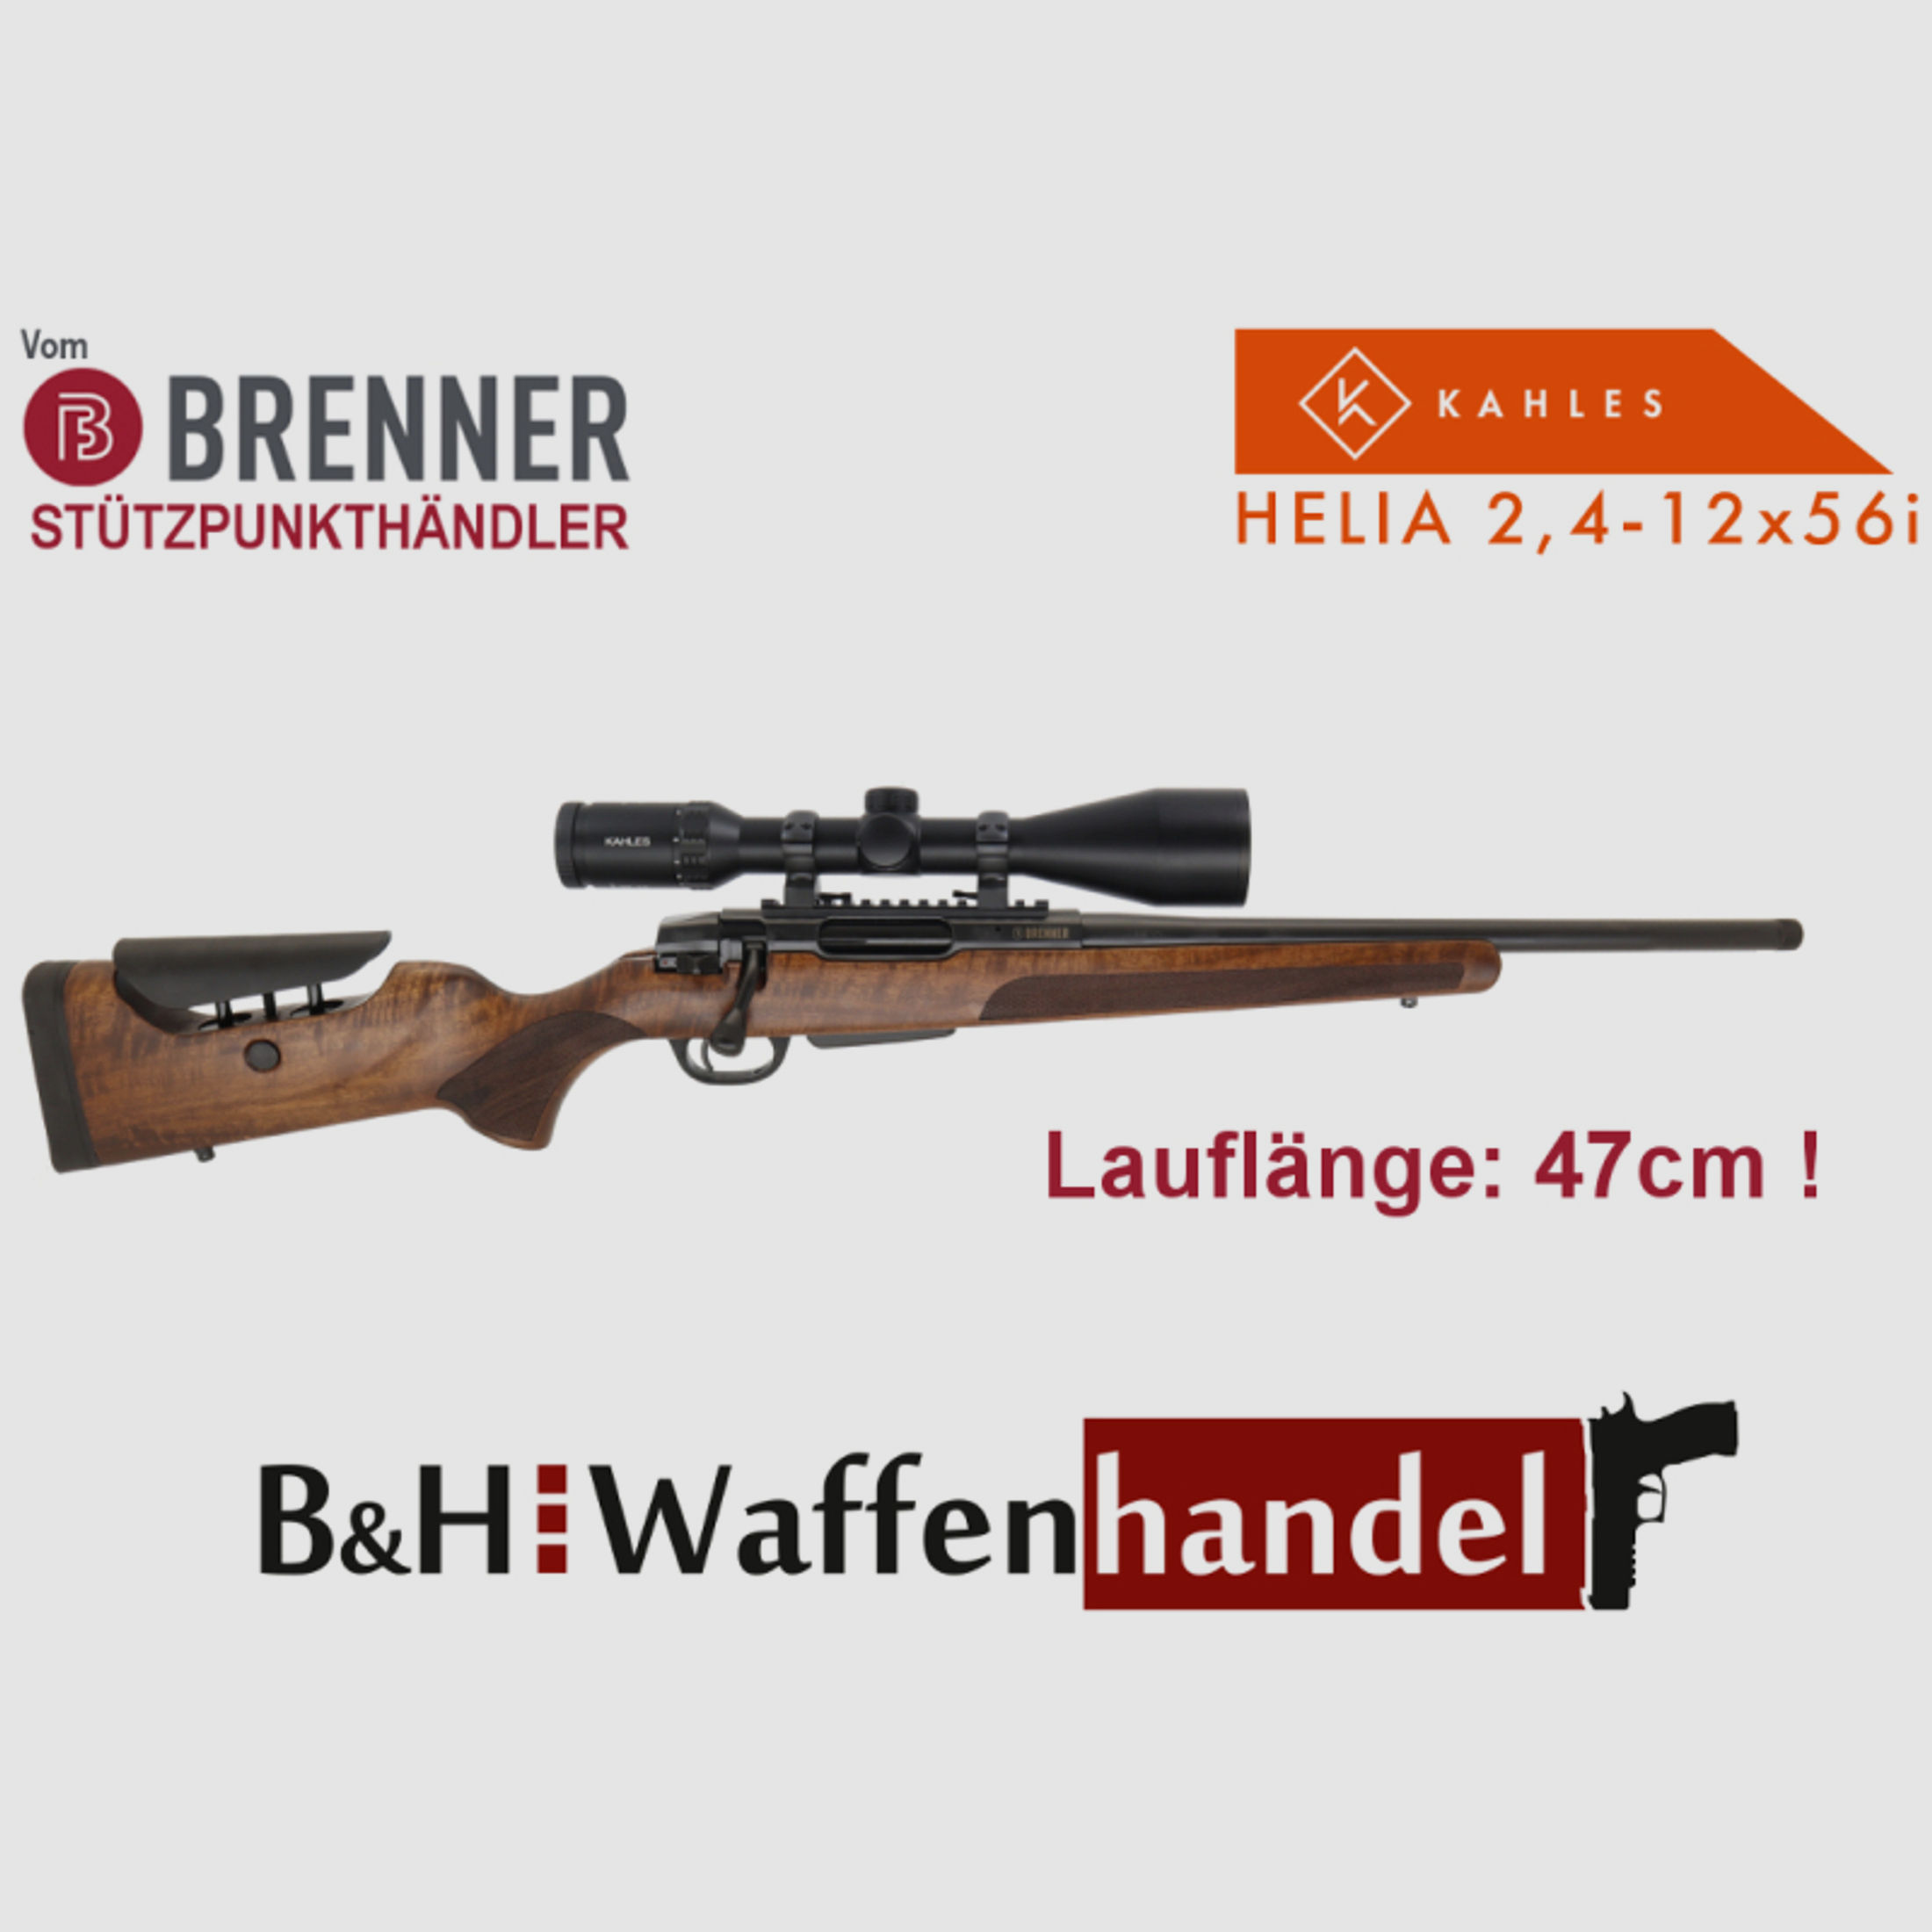 Neu: Brenner Paket BR20 L.E. LL 47cm SCHWARZ verst. Schaftrücken mit ZF Kahles Helia Ratenkauf mögl.